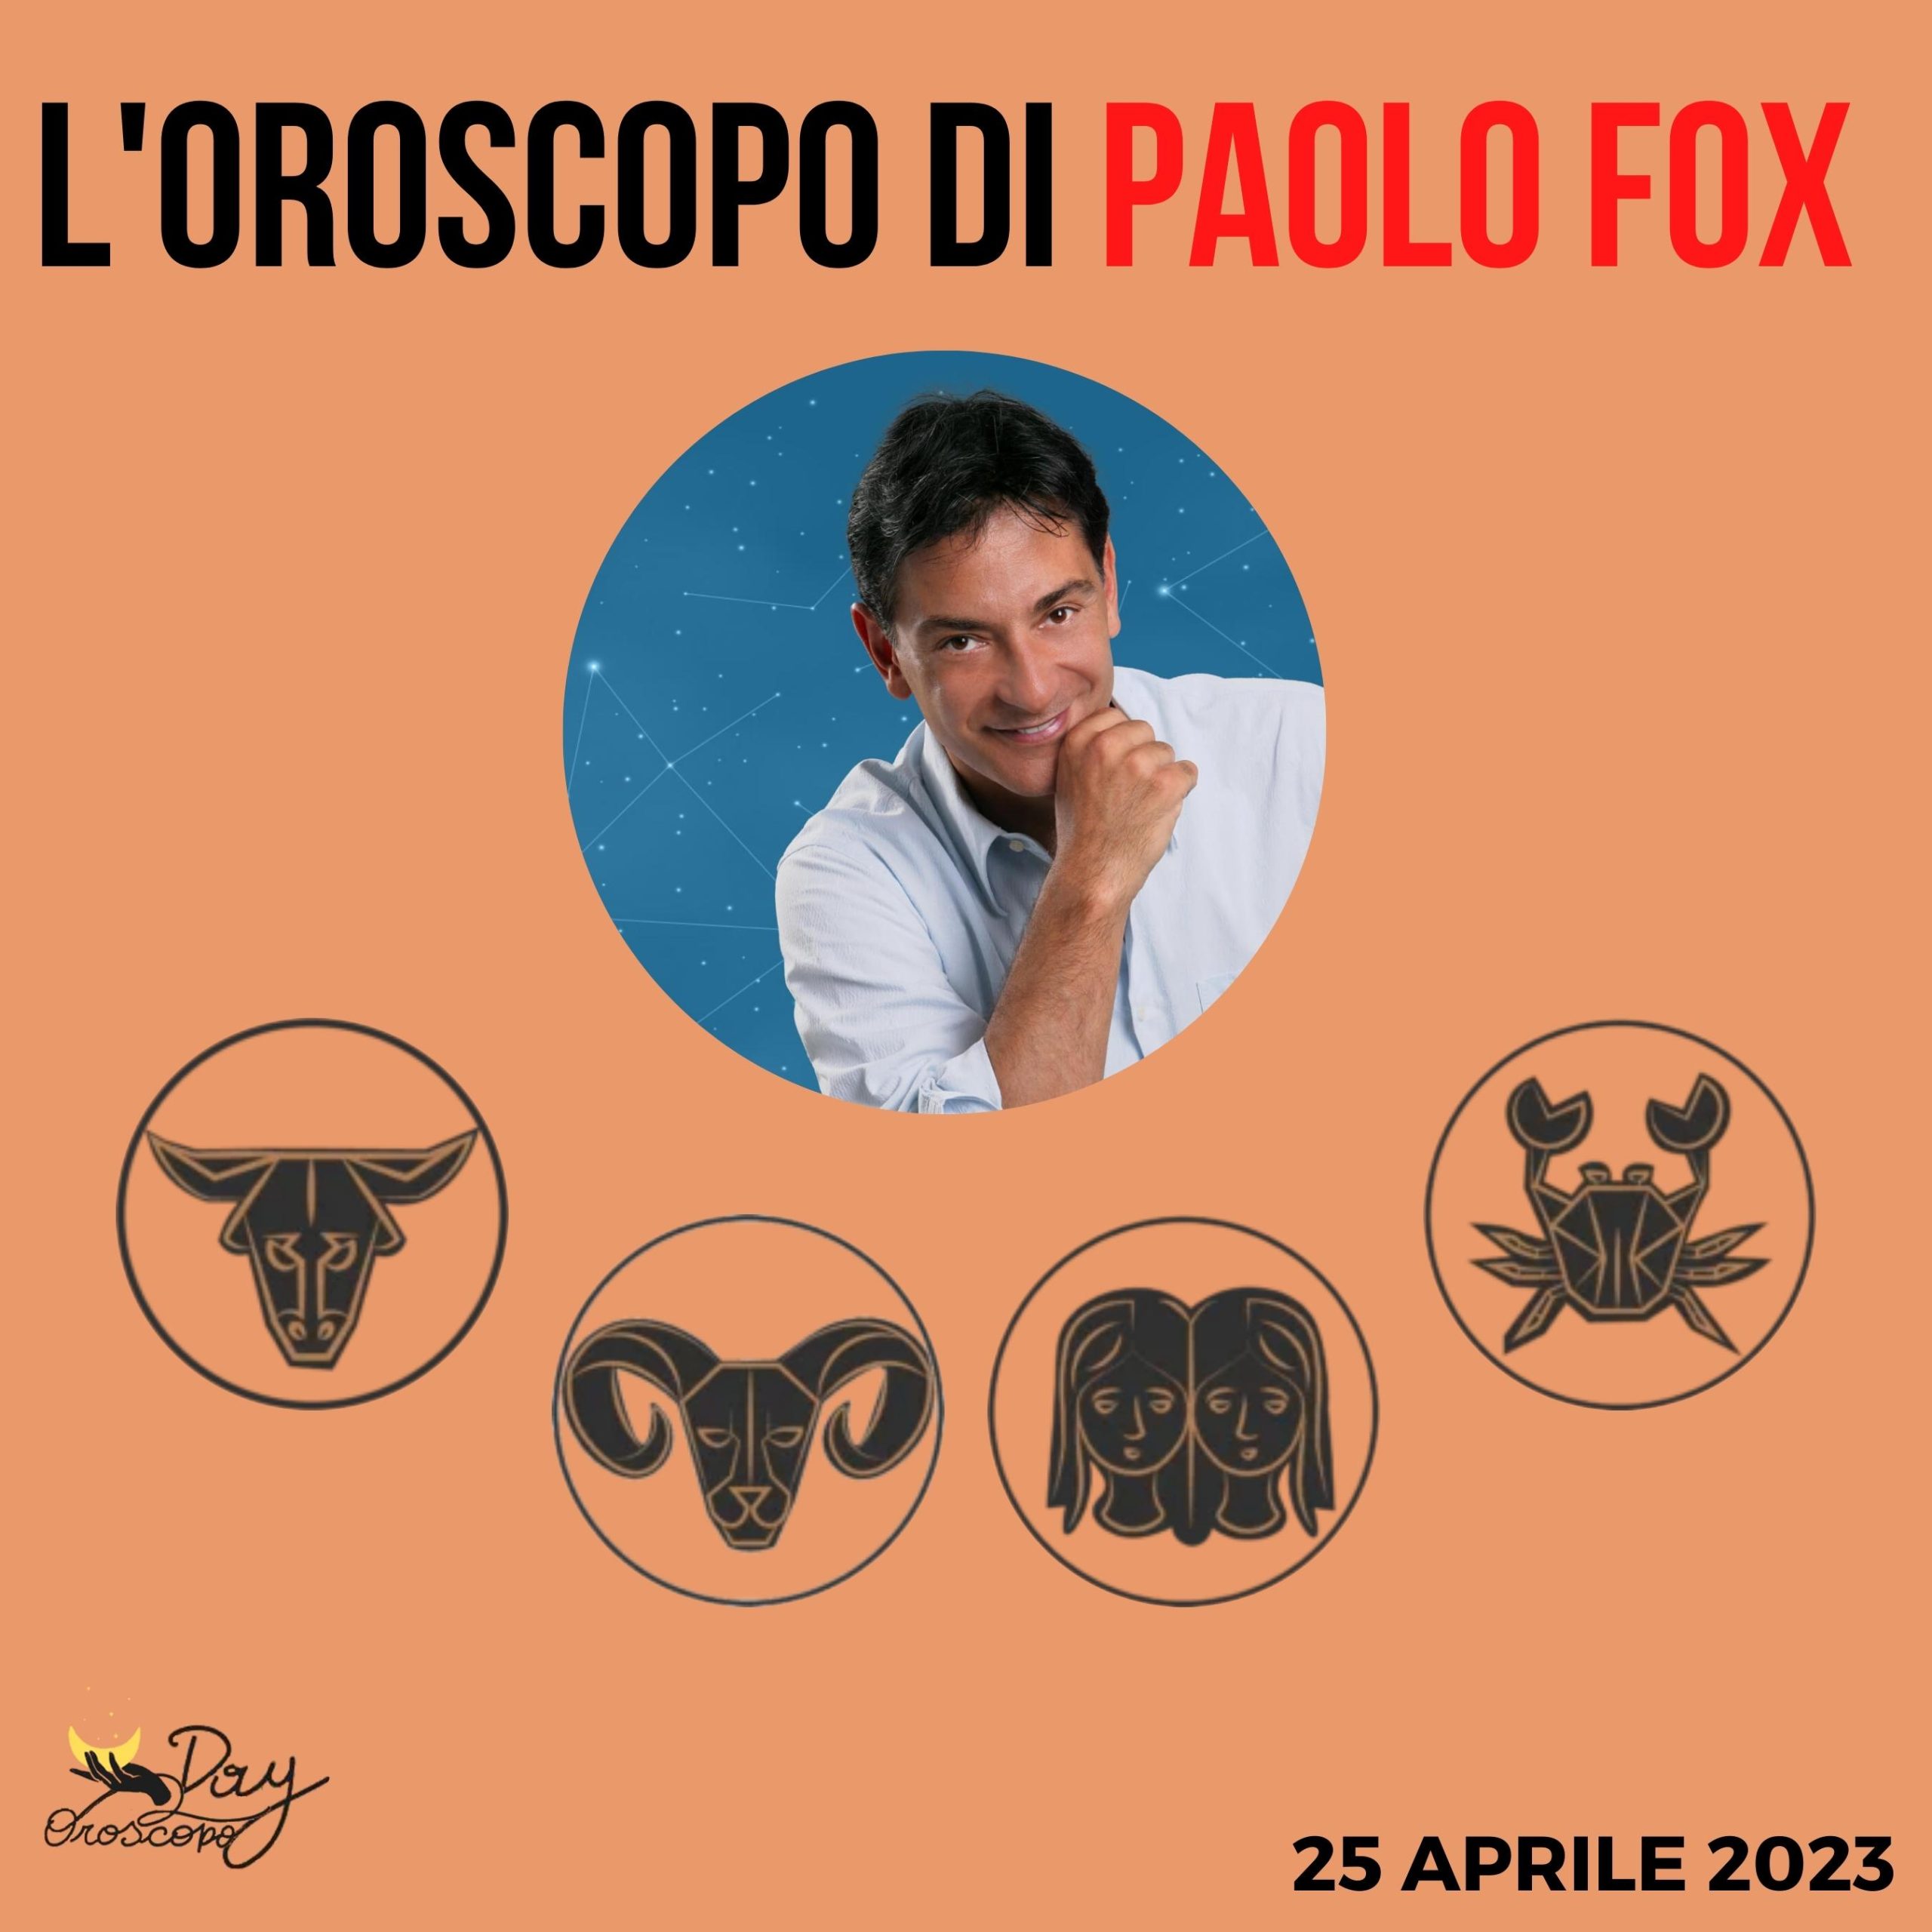 Oroscopo oggi domani Paolo Fox 25 aprile Toro Ariete Gemelli Cancro